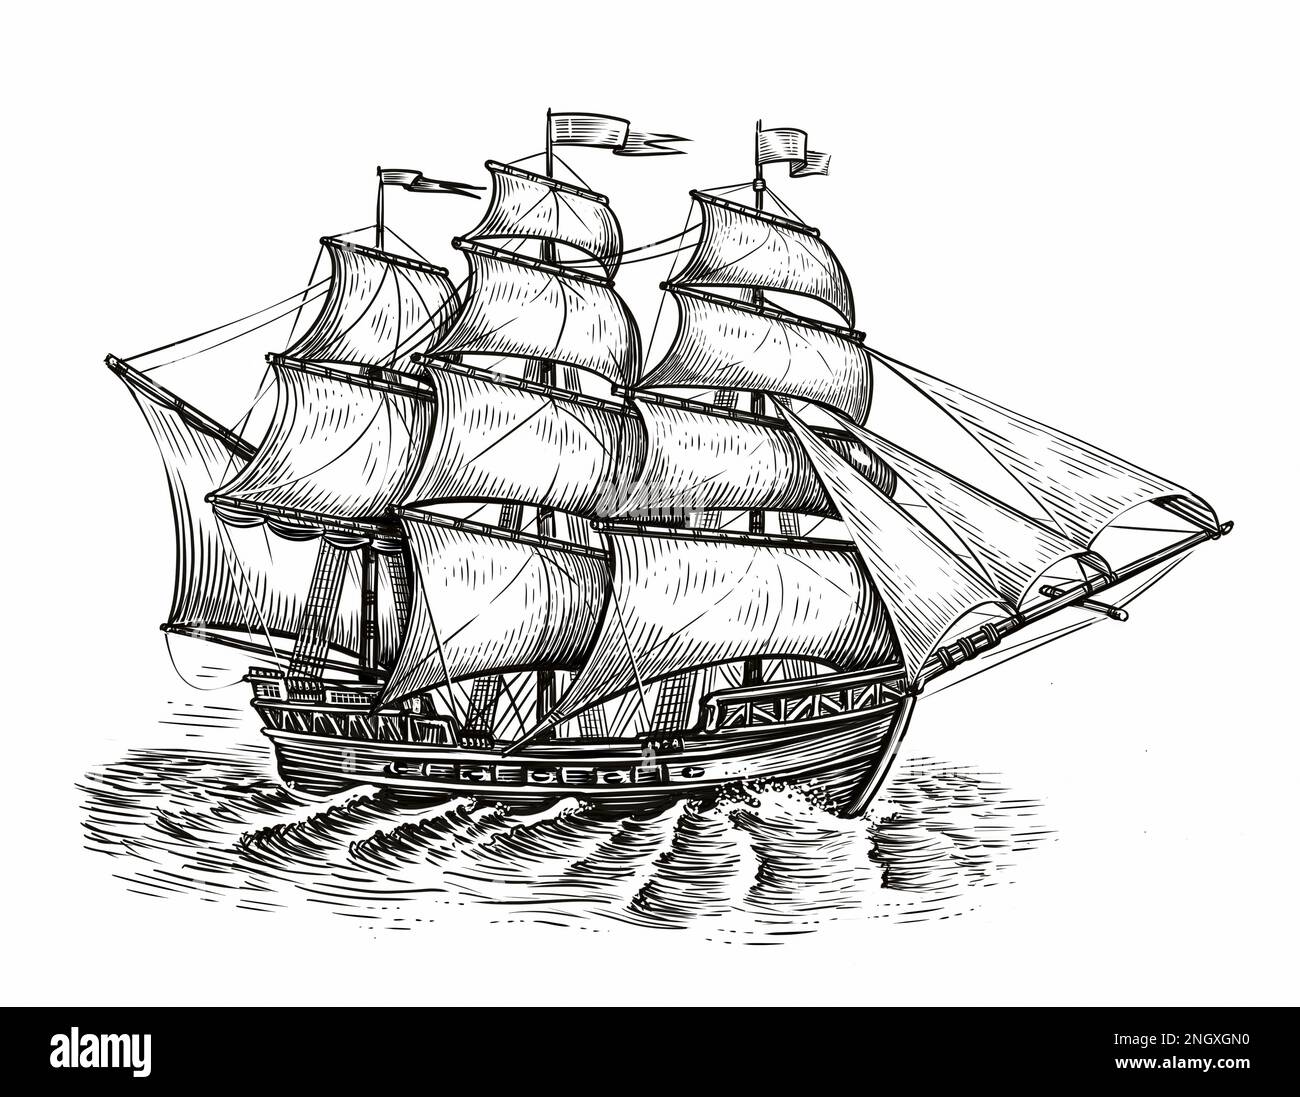 Skizze des Segelschiffs. Meereskonzept. Klassisches Segelboot im klassischen Gravurstil Stockfoto